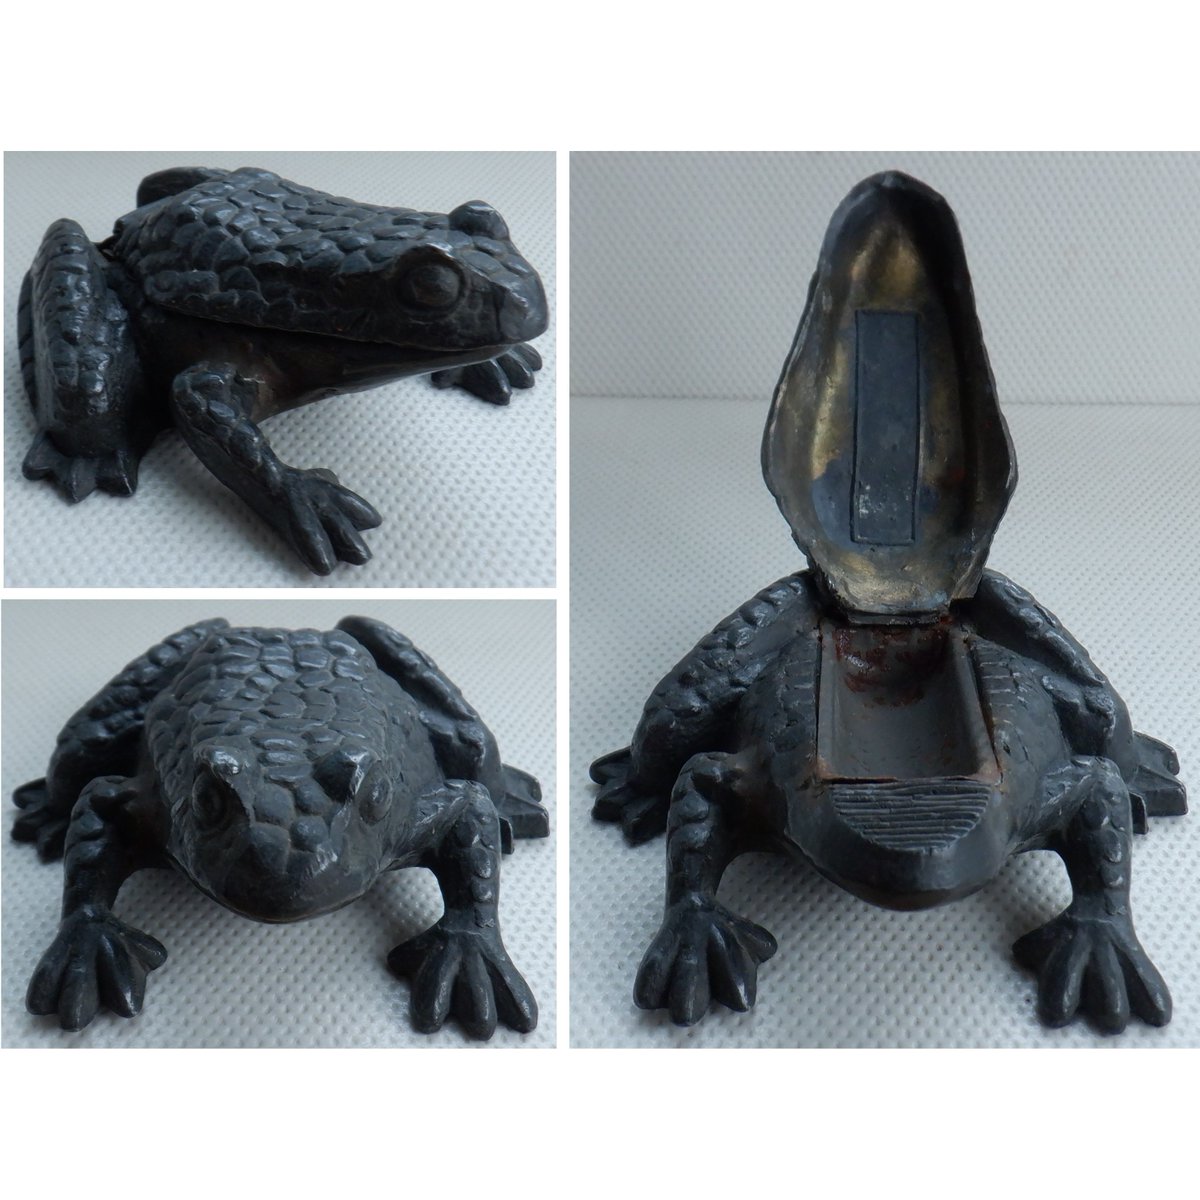 A vintage cast metal toad/frog design match holder stoves vesta striker. 4.5 cm in height. 🐸 🛒 ebay.co.uk/itm/1664320323… #Vintage #FollowVintage #Frog #Toad #VintageFind #eBay